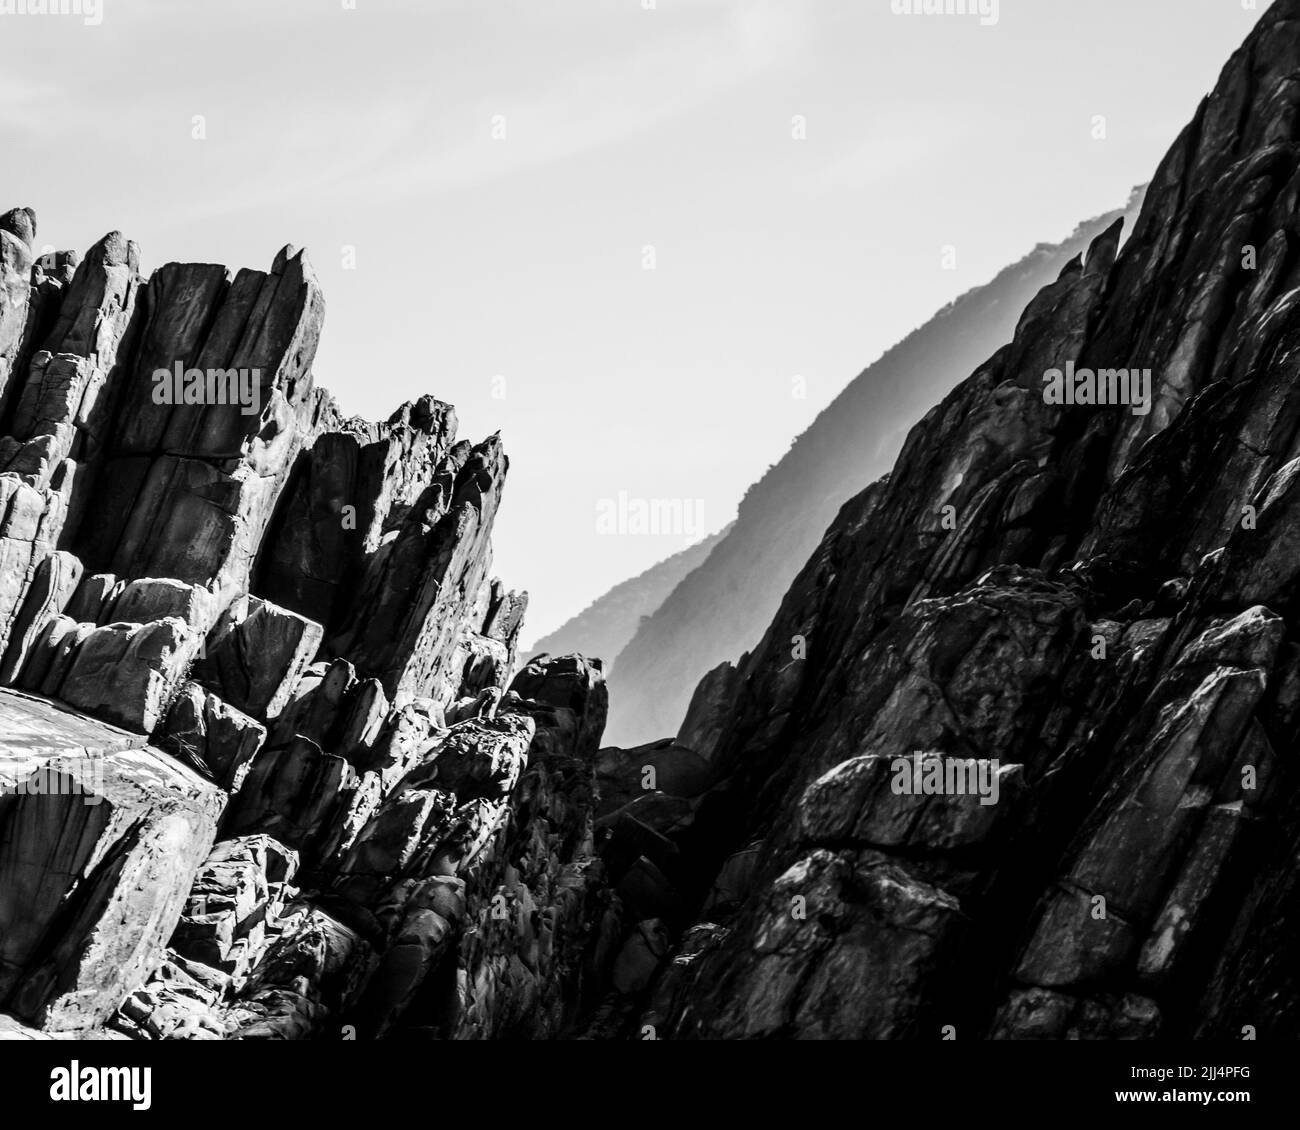 Strati di roccia inclinati, della Costa Tsitsikamma, Sudafrica, con le lontane scogliere blu sullo sfondo. Foto Stock